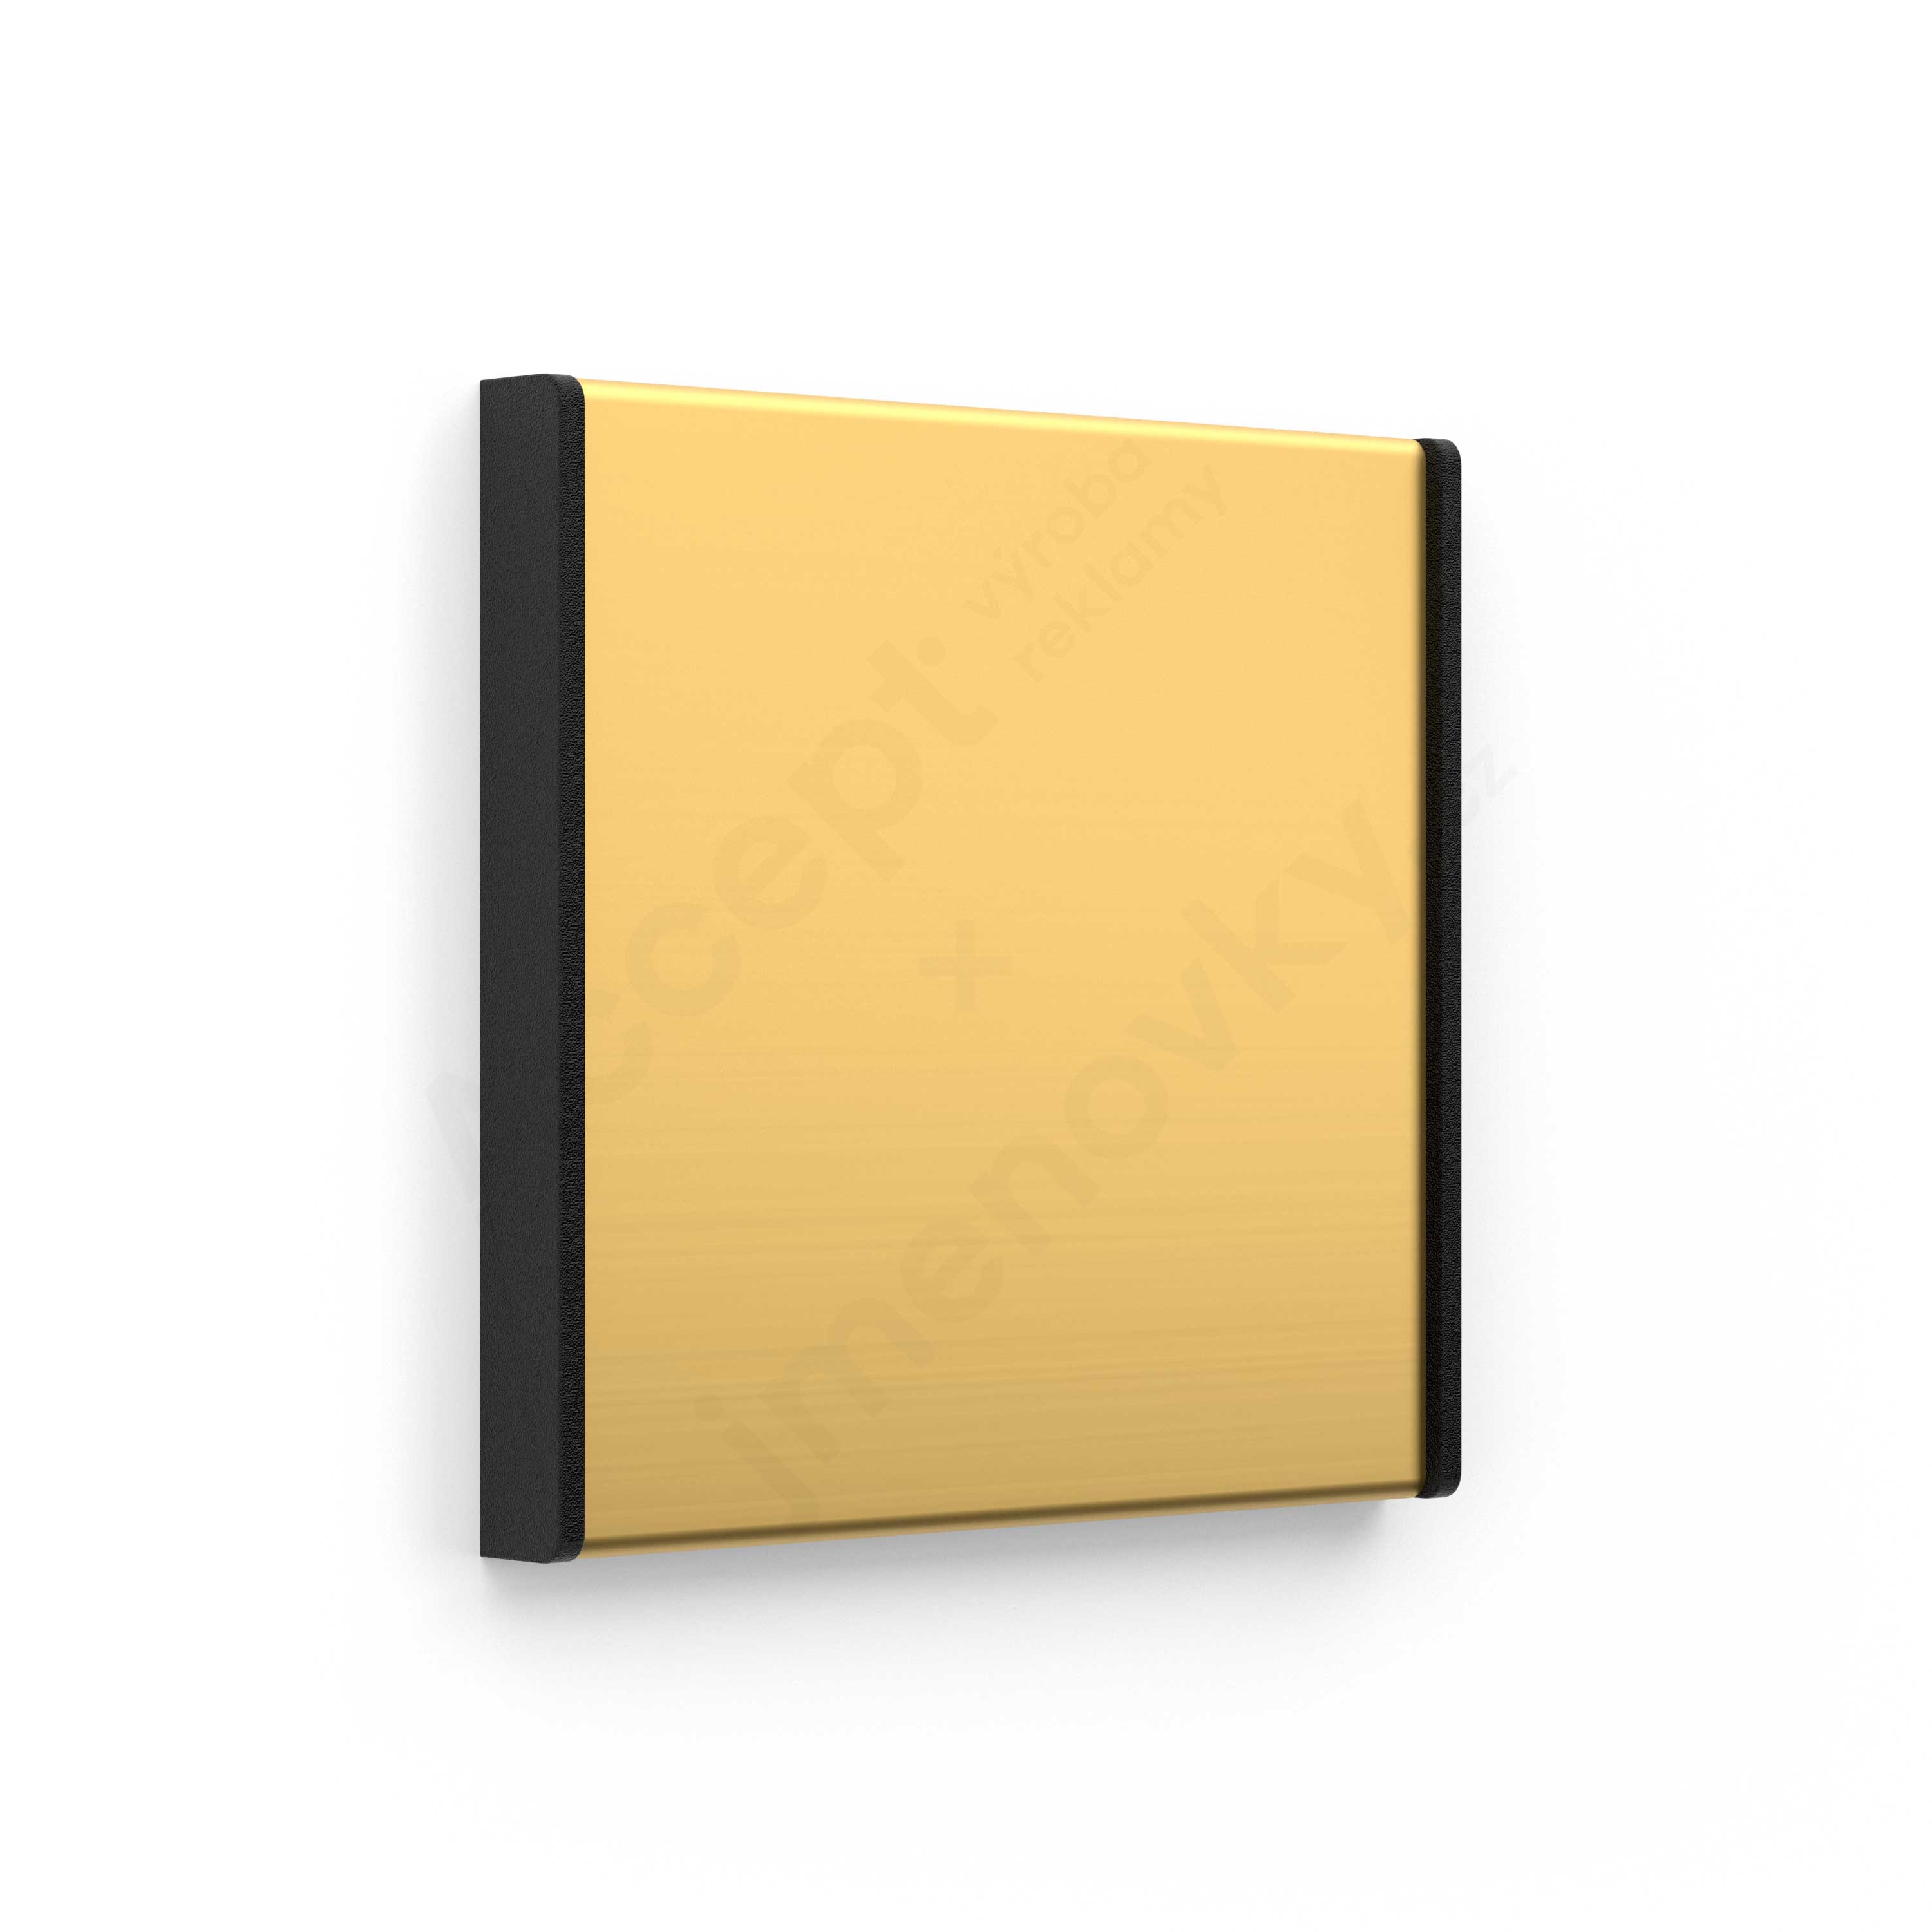 Dveřní tabulka ACS zlatá čtvercová (nezásuvný systém, 93 x 93 mm)